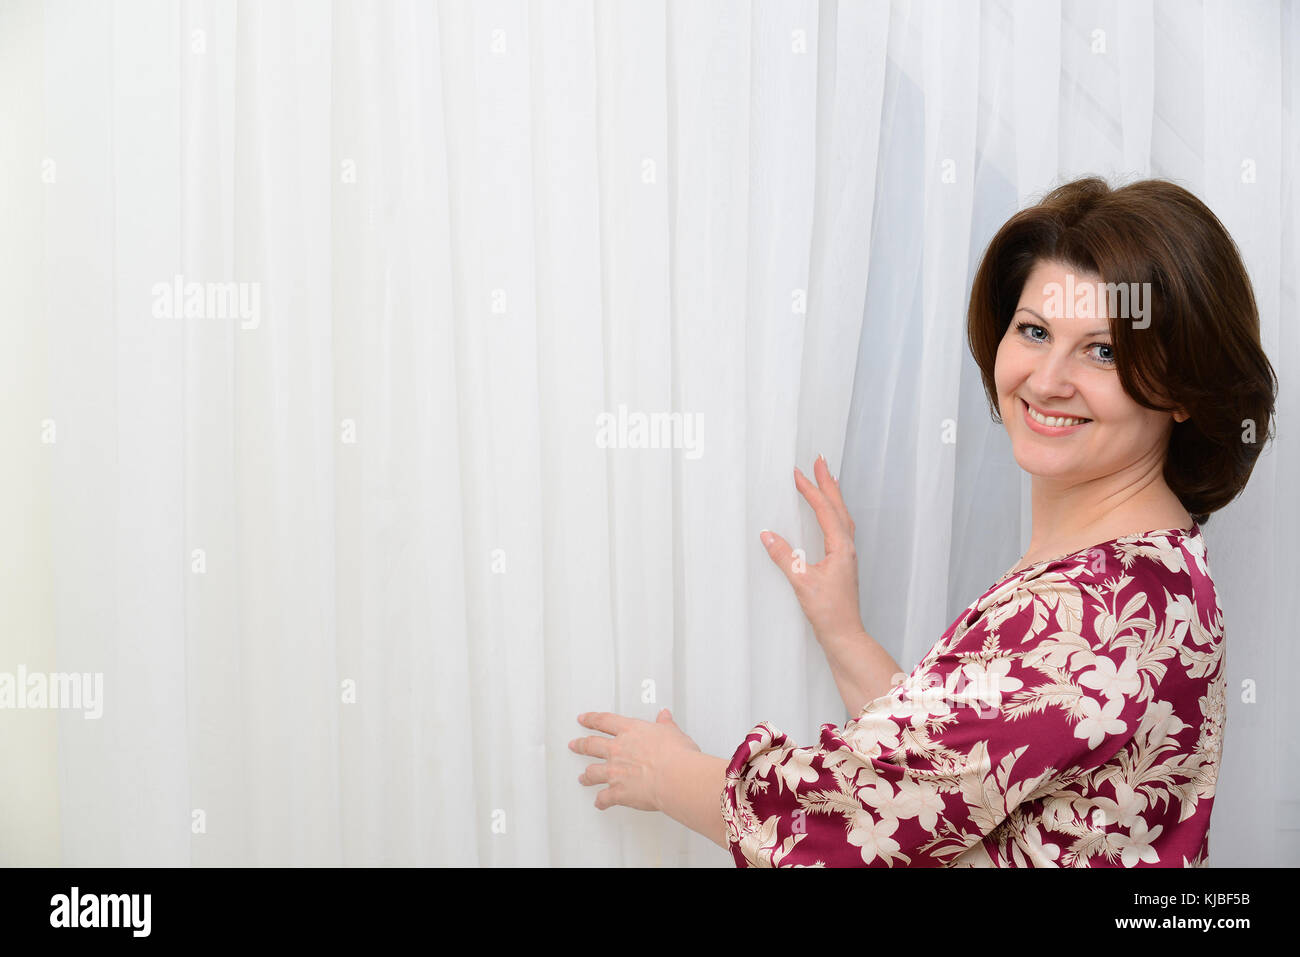 Die Frau steht in der Nähe von tulle weiße Vorhänge Stockfoto